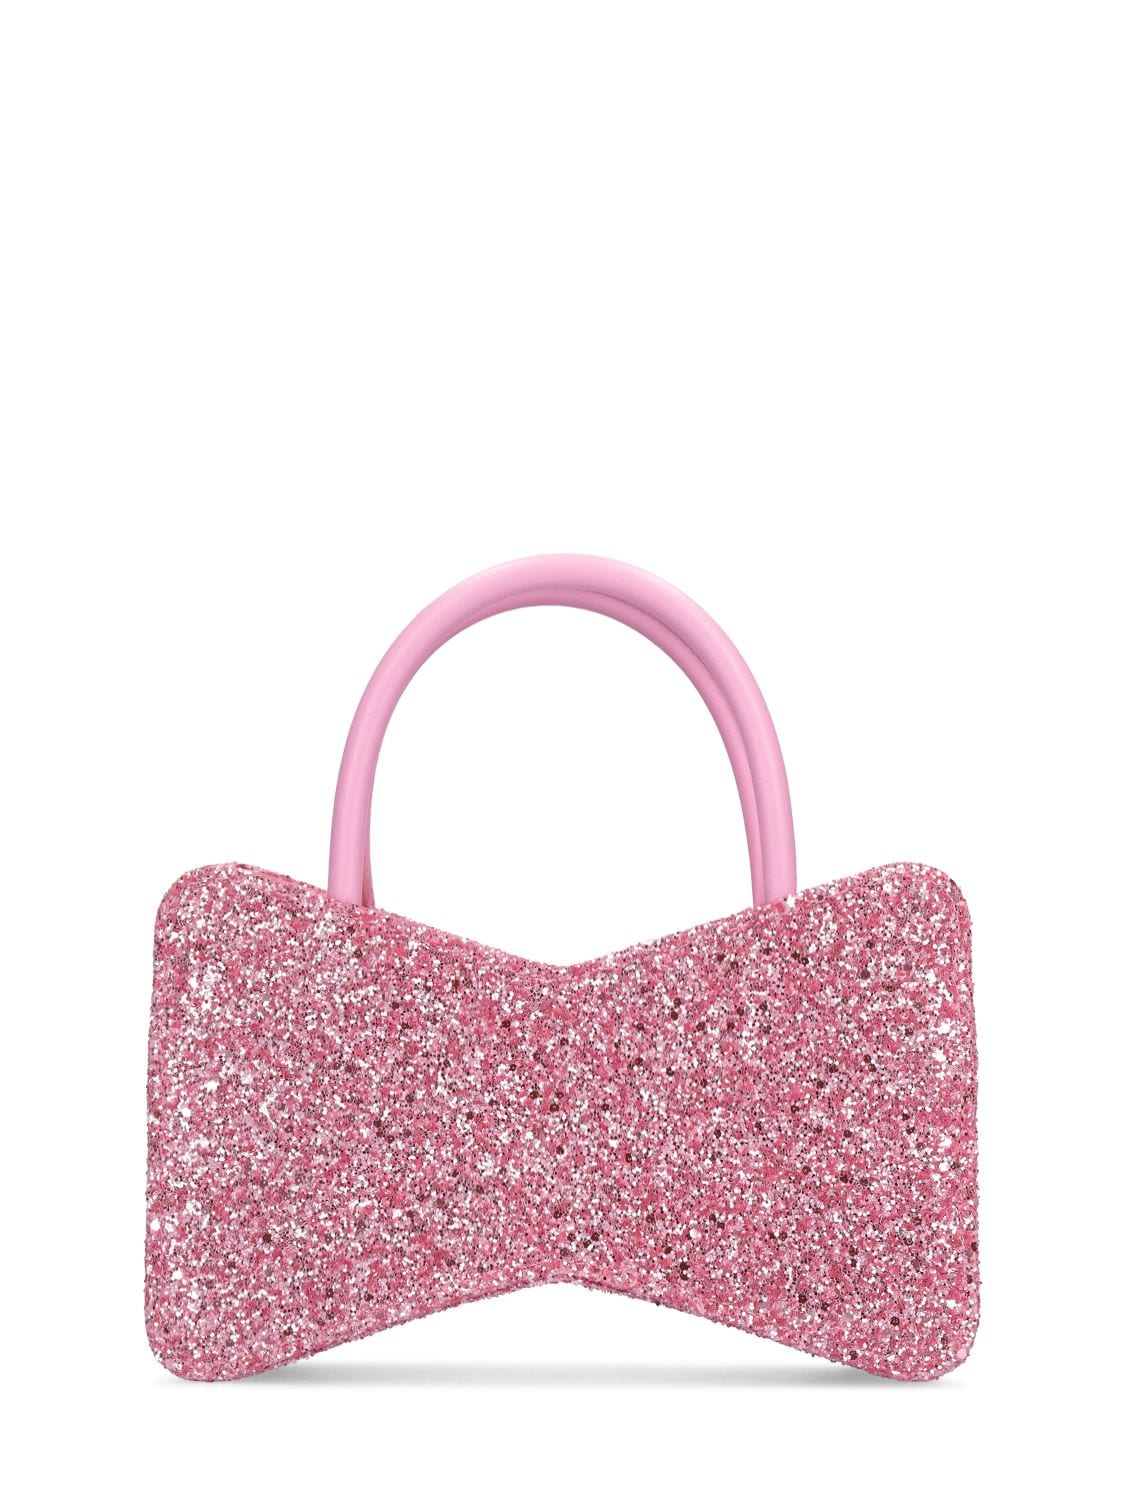 MACH & MACH Bow Shape Glitter Top Handle Bag